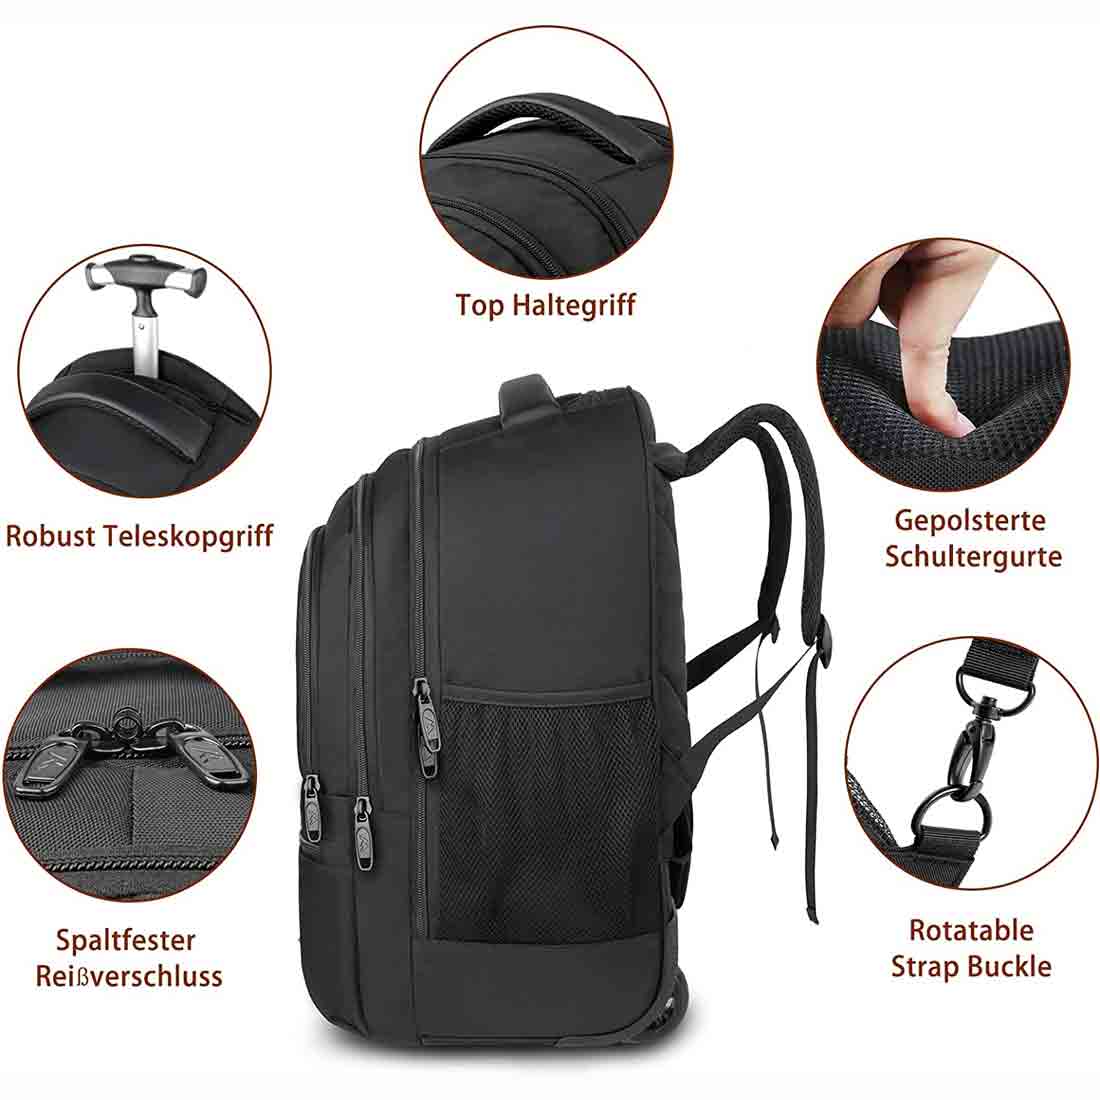 Matein Travel Messenger Bags for Laptops